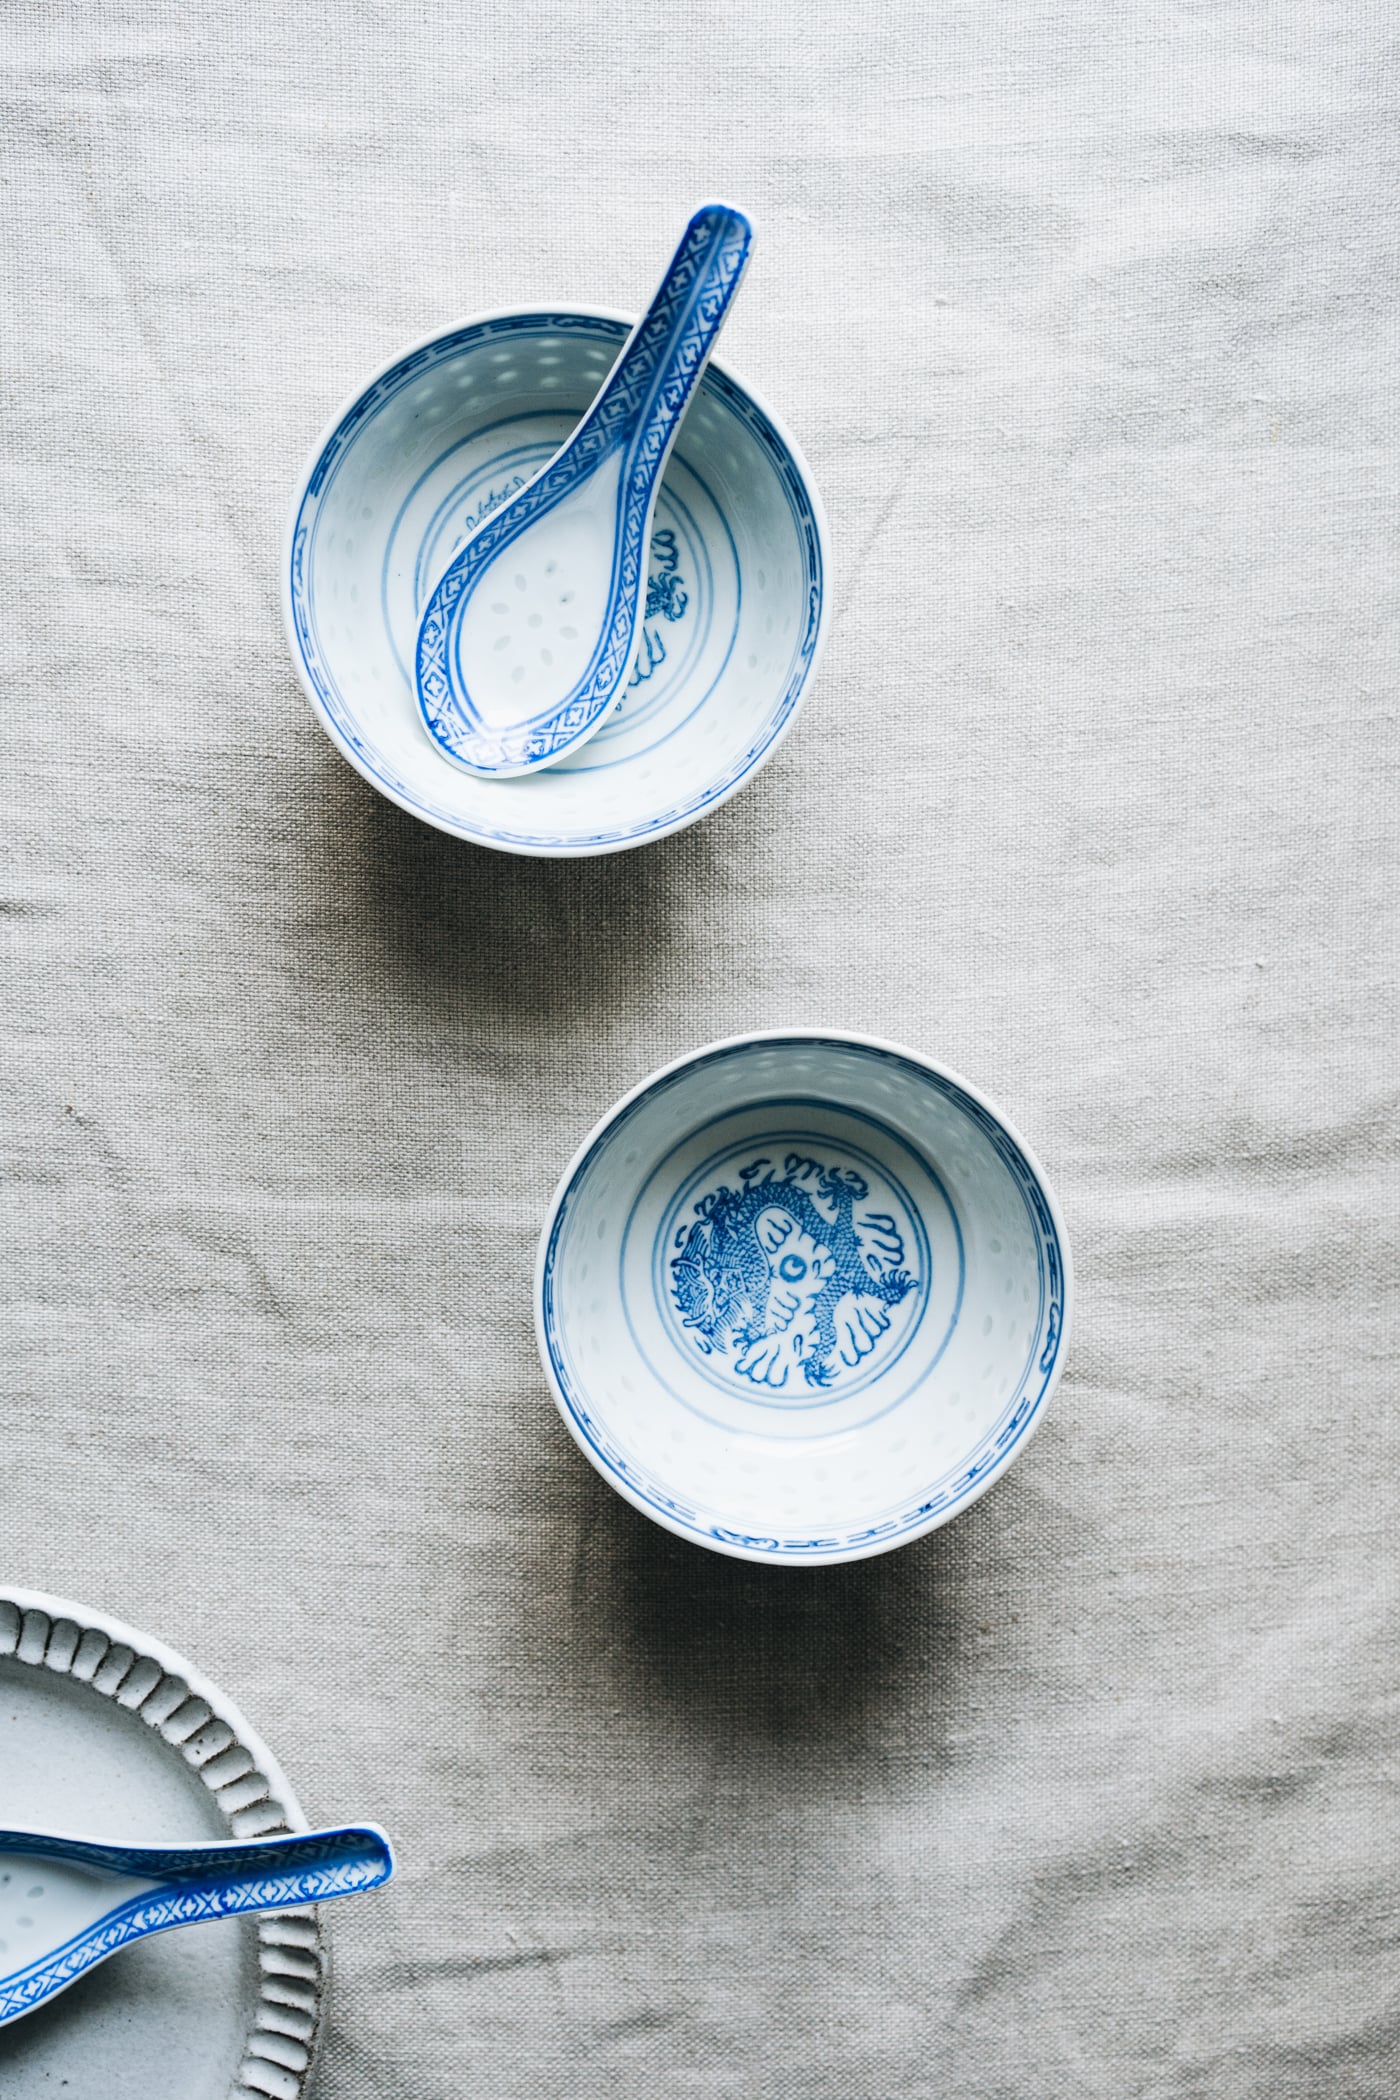 Zwei blau-weiße Schüsseln mit chinesischem Muster